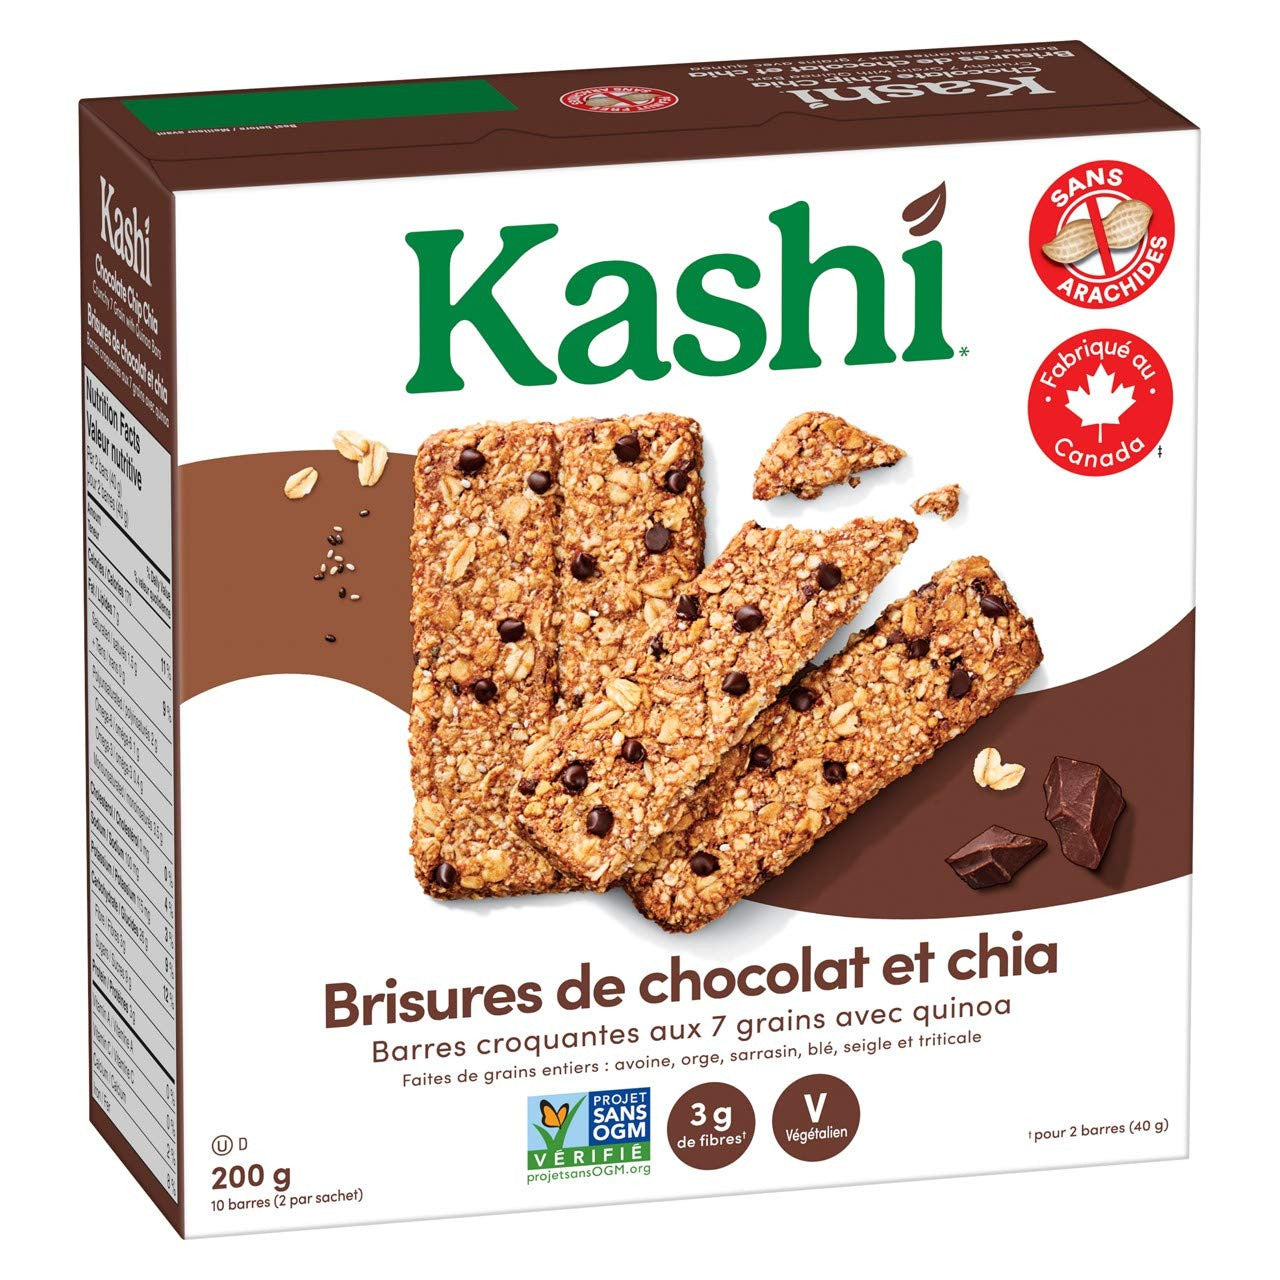 Kashi Seven Grain with Quinoa bars, Chocolate Chip Chia Non-GMO, 200g/7.1oz., box {Imported from Canada}